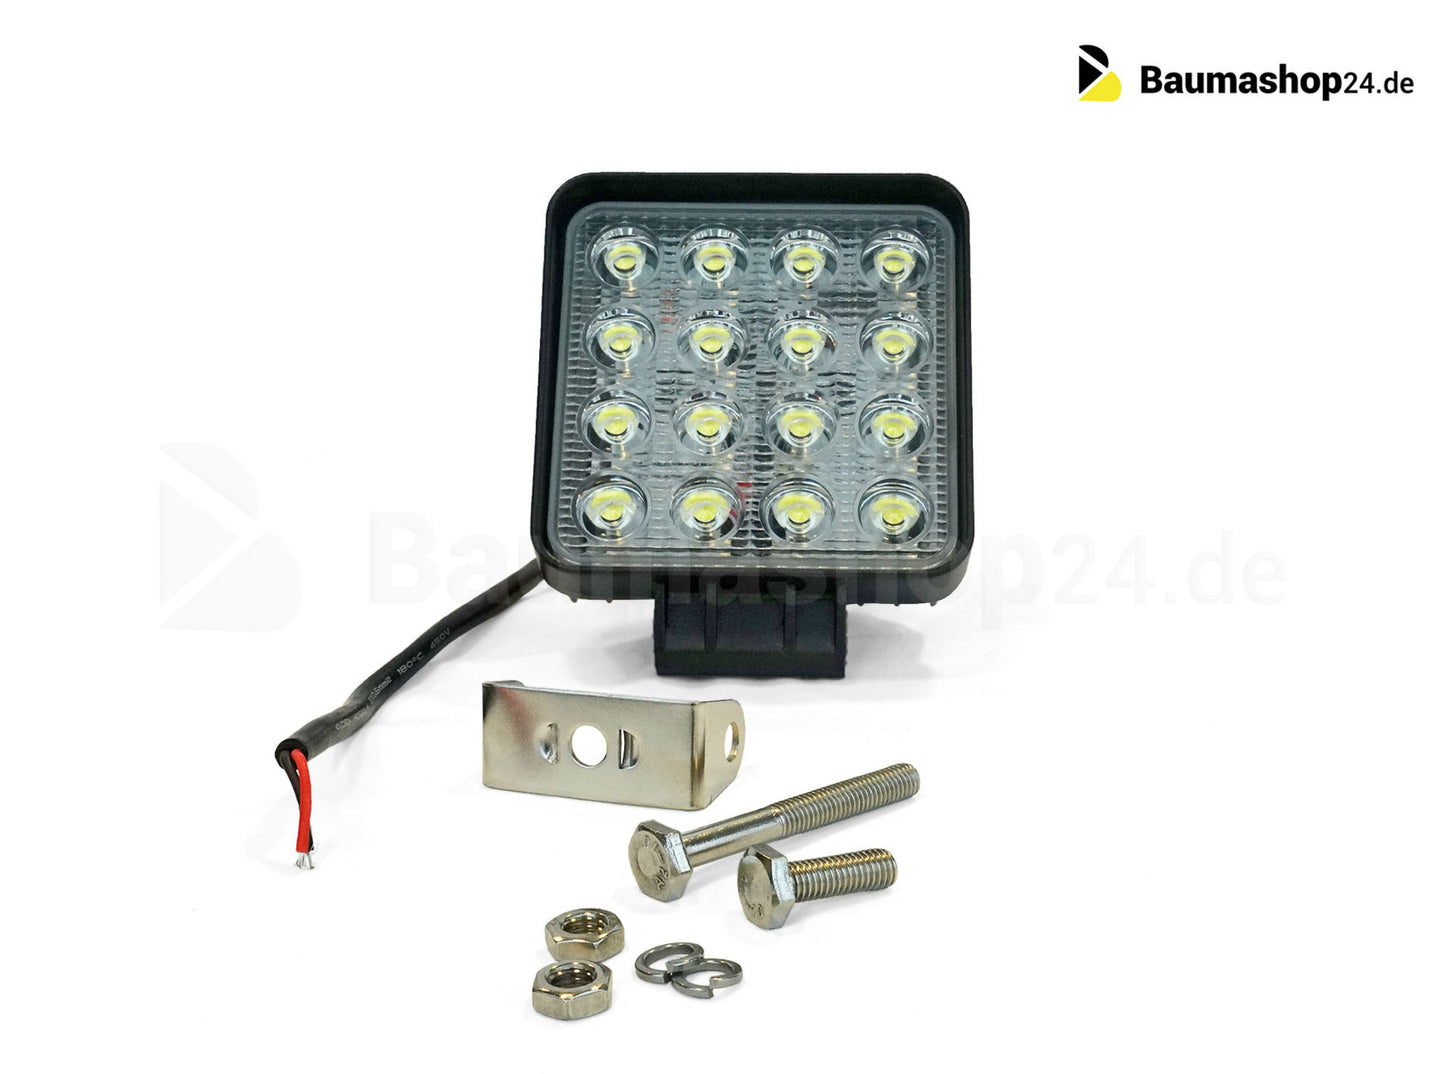 LED Arbeitsscheinwerfer 6000K AMA180117 für Baumaschinen